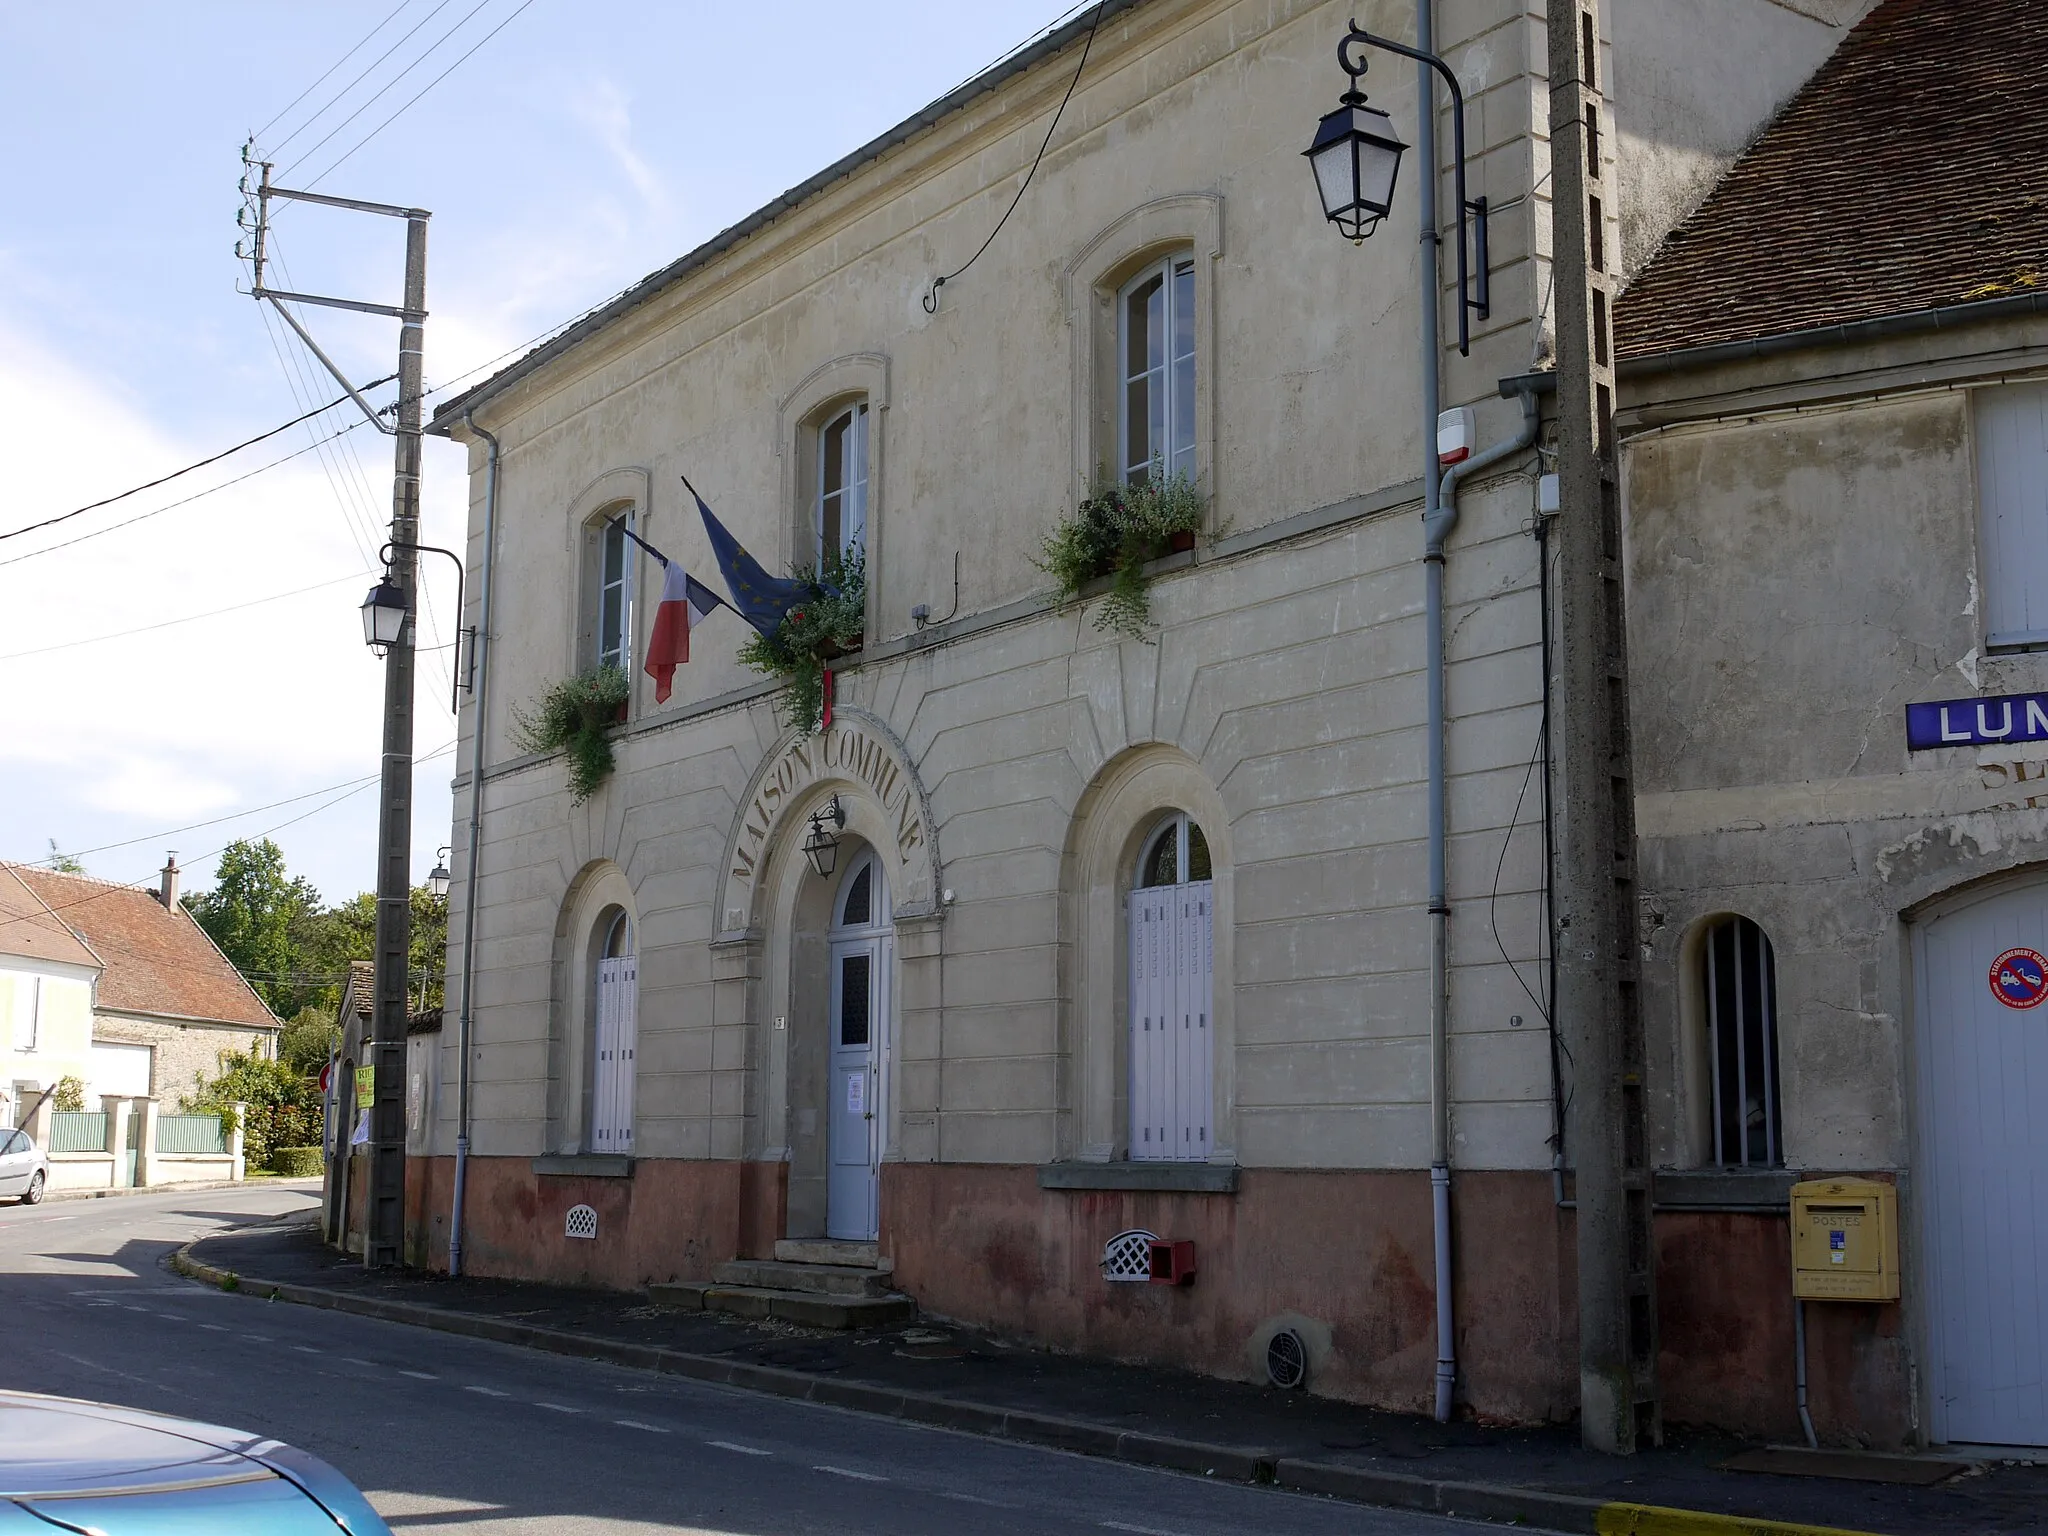 Photo showing: Maison commune of Lumigny, Seine et Marne Ile de France